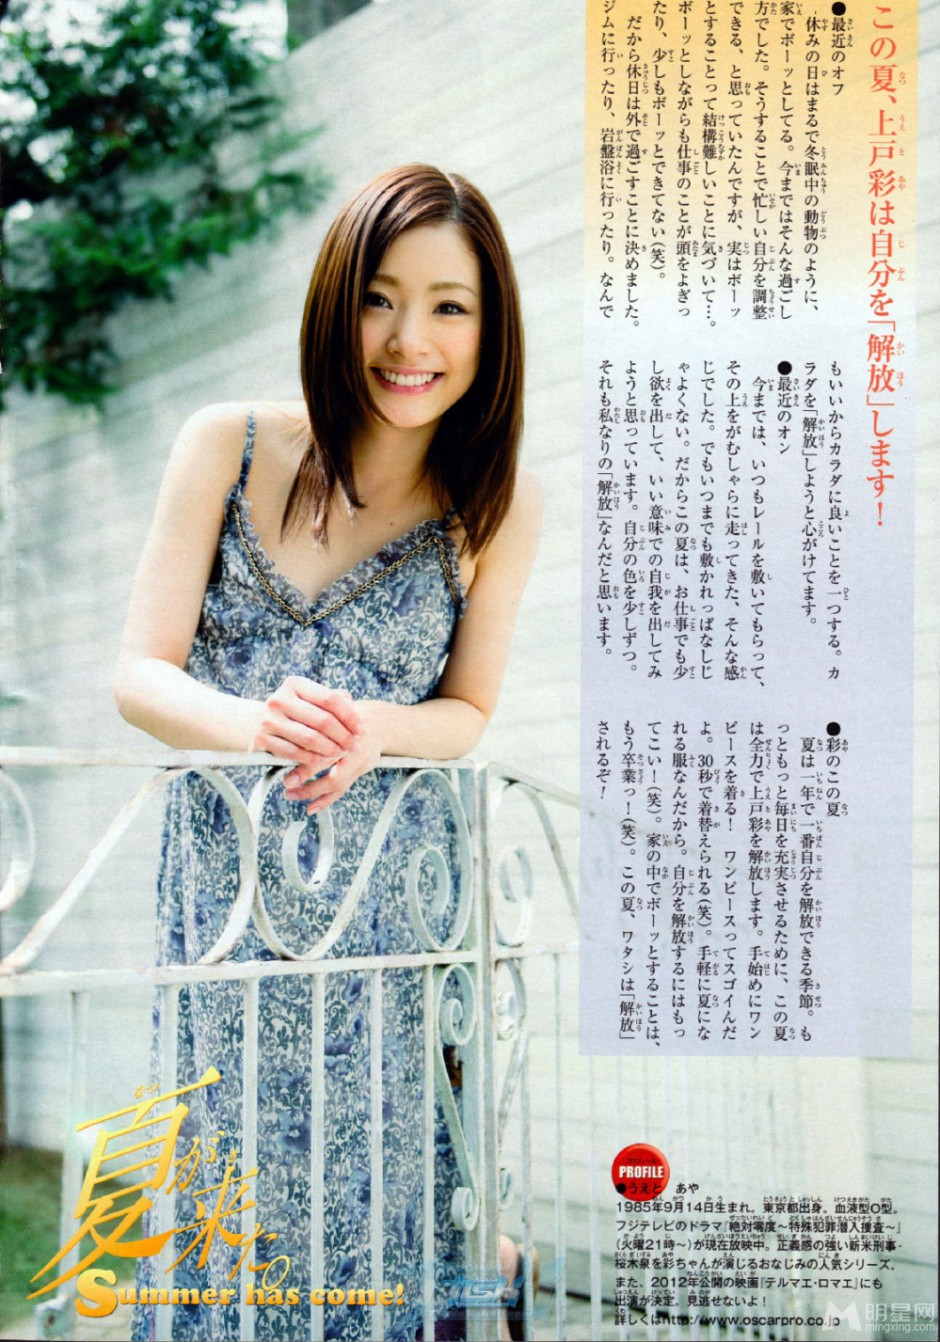 日本美女明星上户彩的清纯杂志照